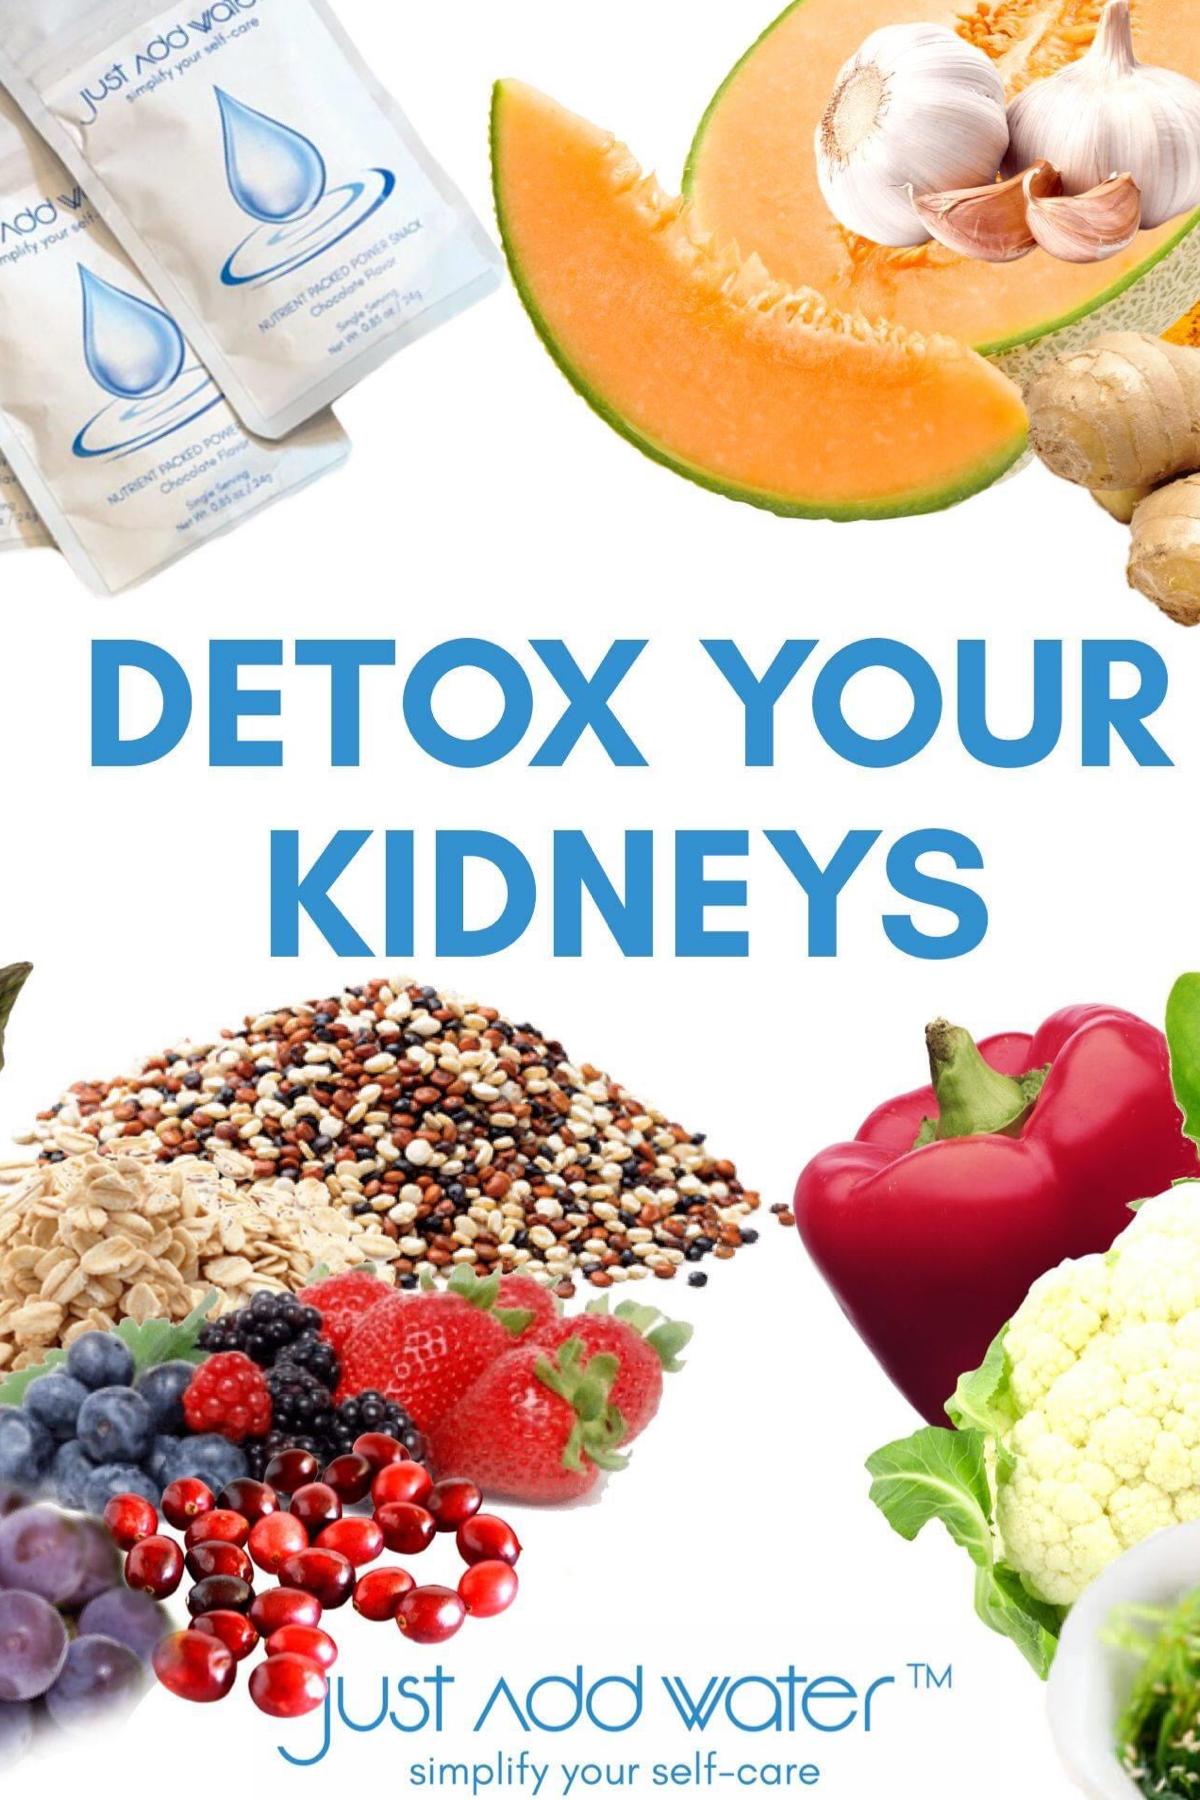 Foods the detox your kidneys